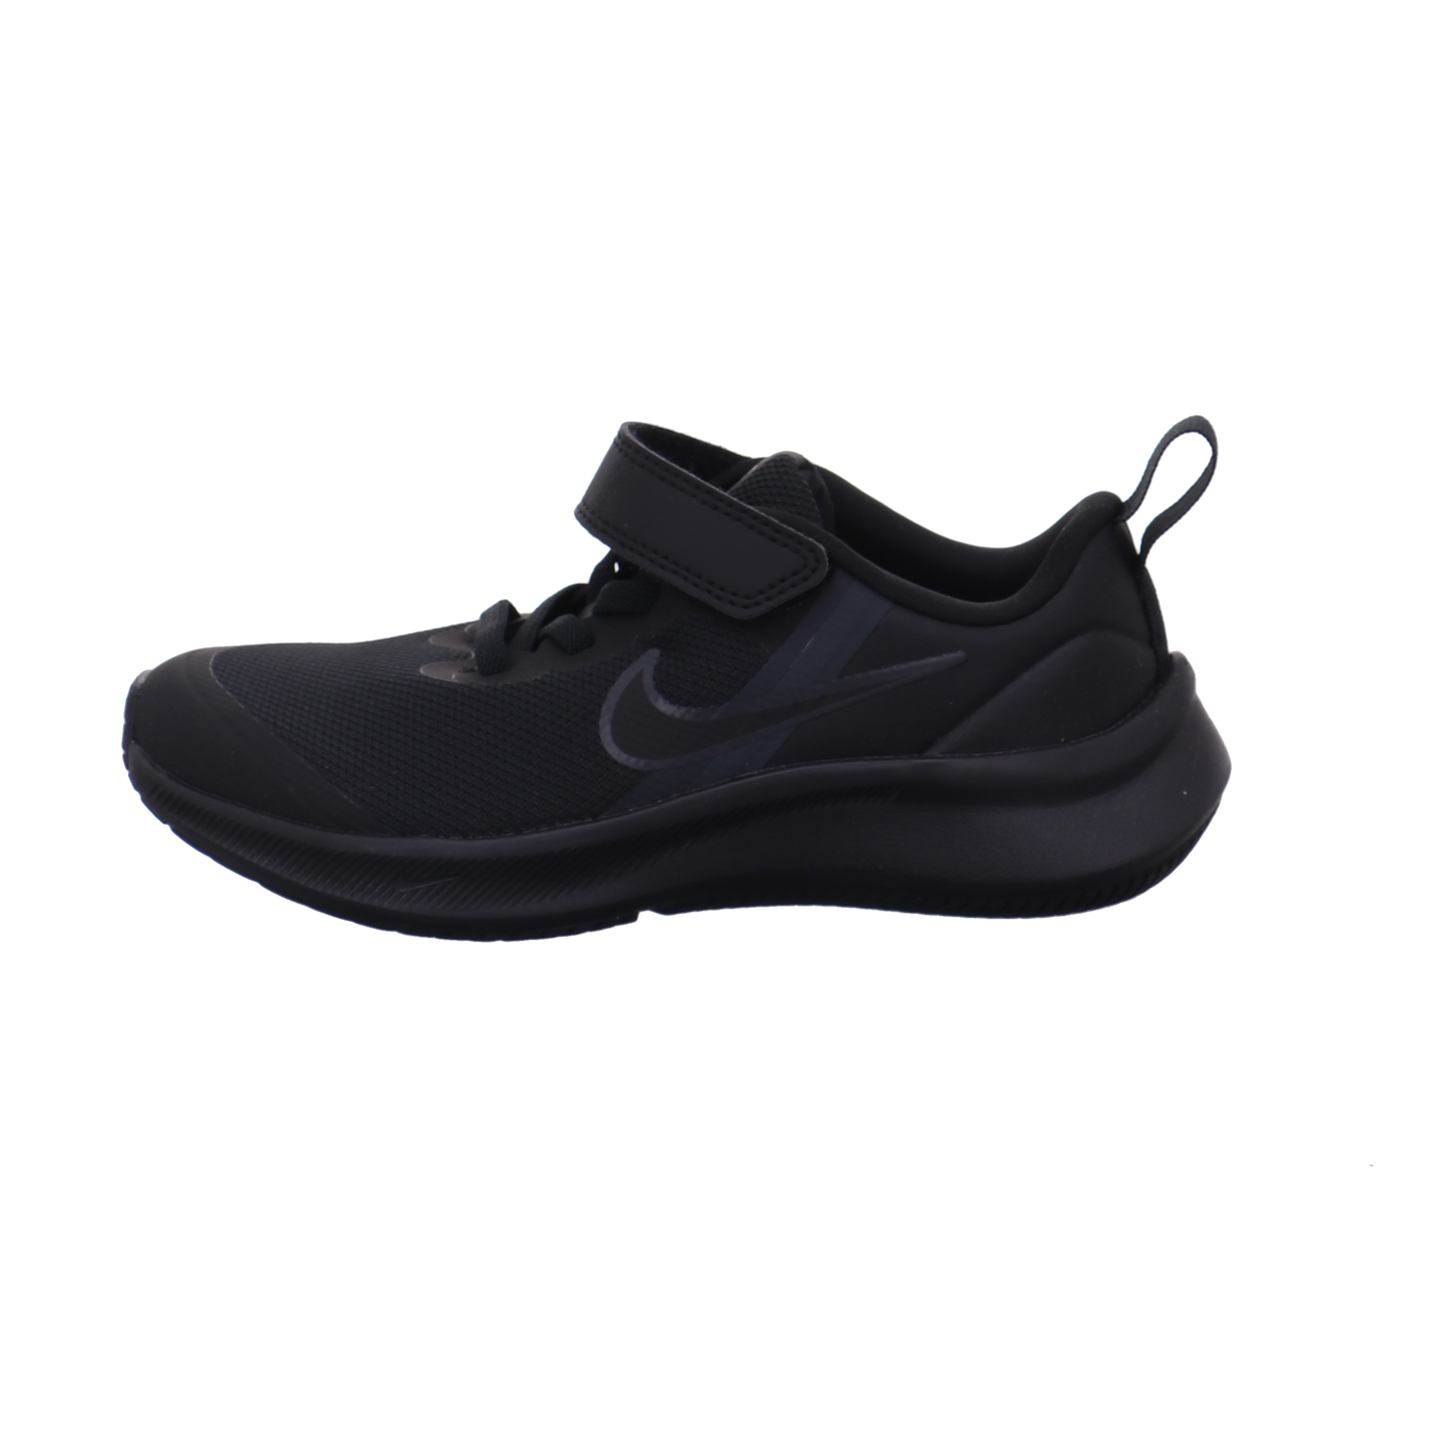 Nike Halbschuhe schwarz Bild1